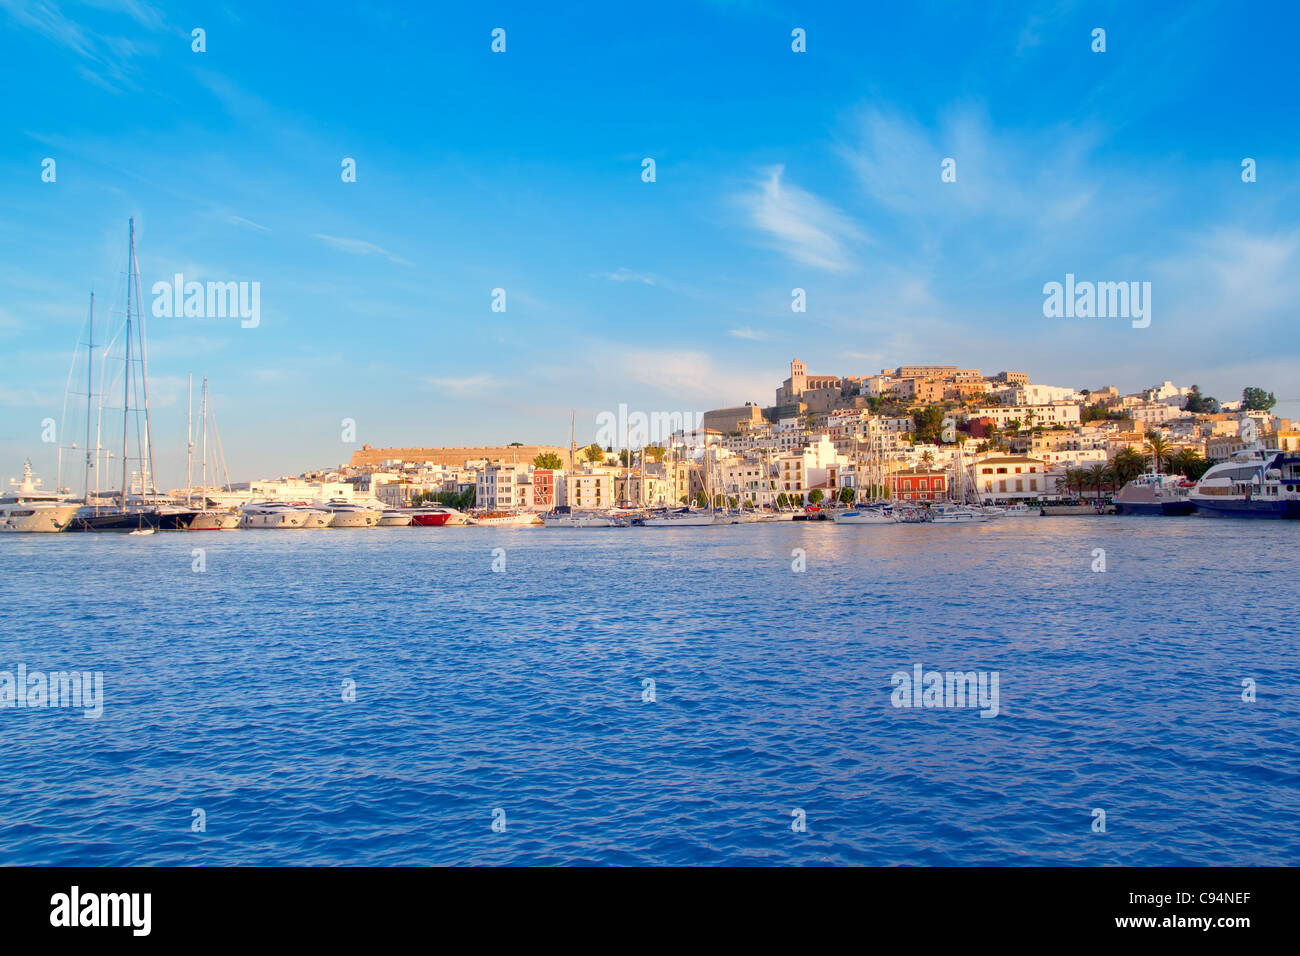 Eivissa Ibiza ville avec vue sur la mer Méditerranée Banque D'Images